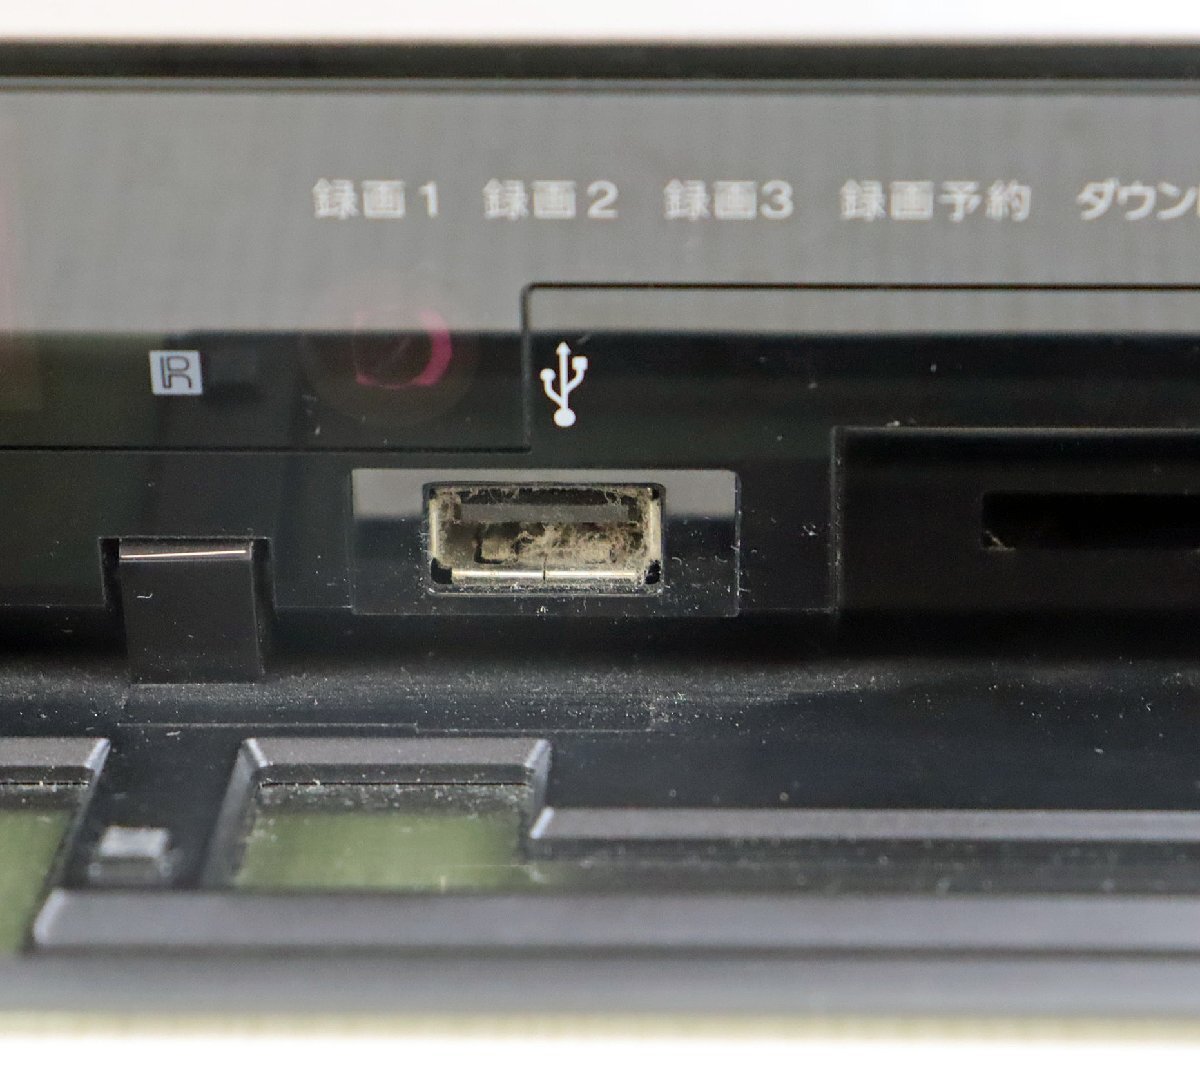 M★ジャンク品★映像機器 『ブルーレイディスク/DVDレコーダー BDZ-ET2000』 SONY/ソニー 製造:2013年 本体サイズ(約):43×29×5.7cm_USB端子にホコリあり